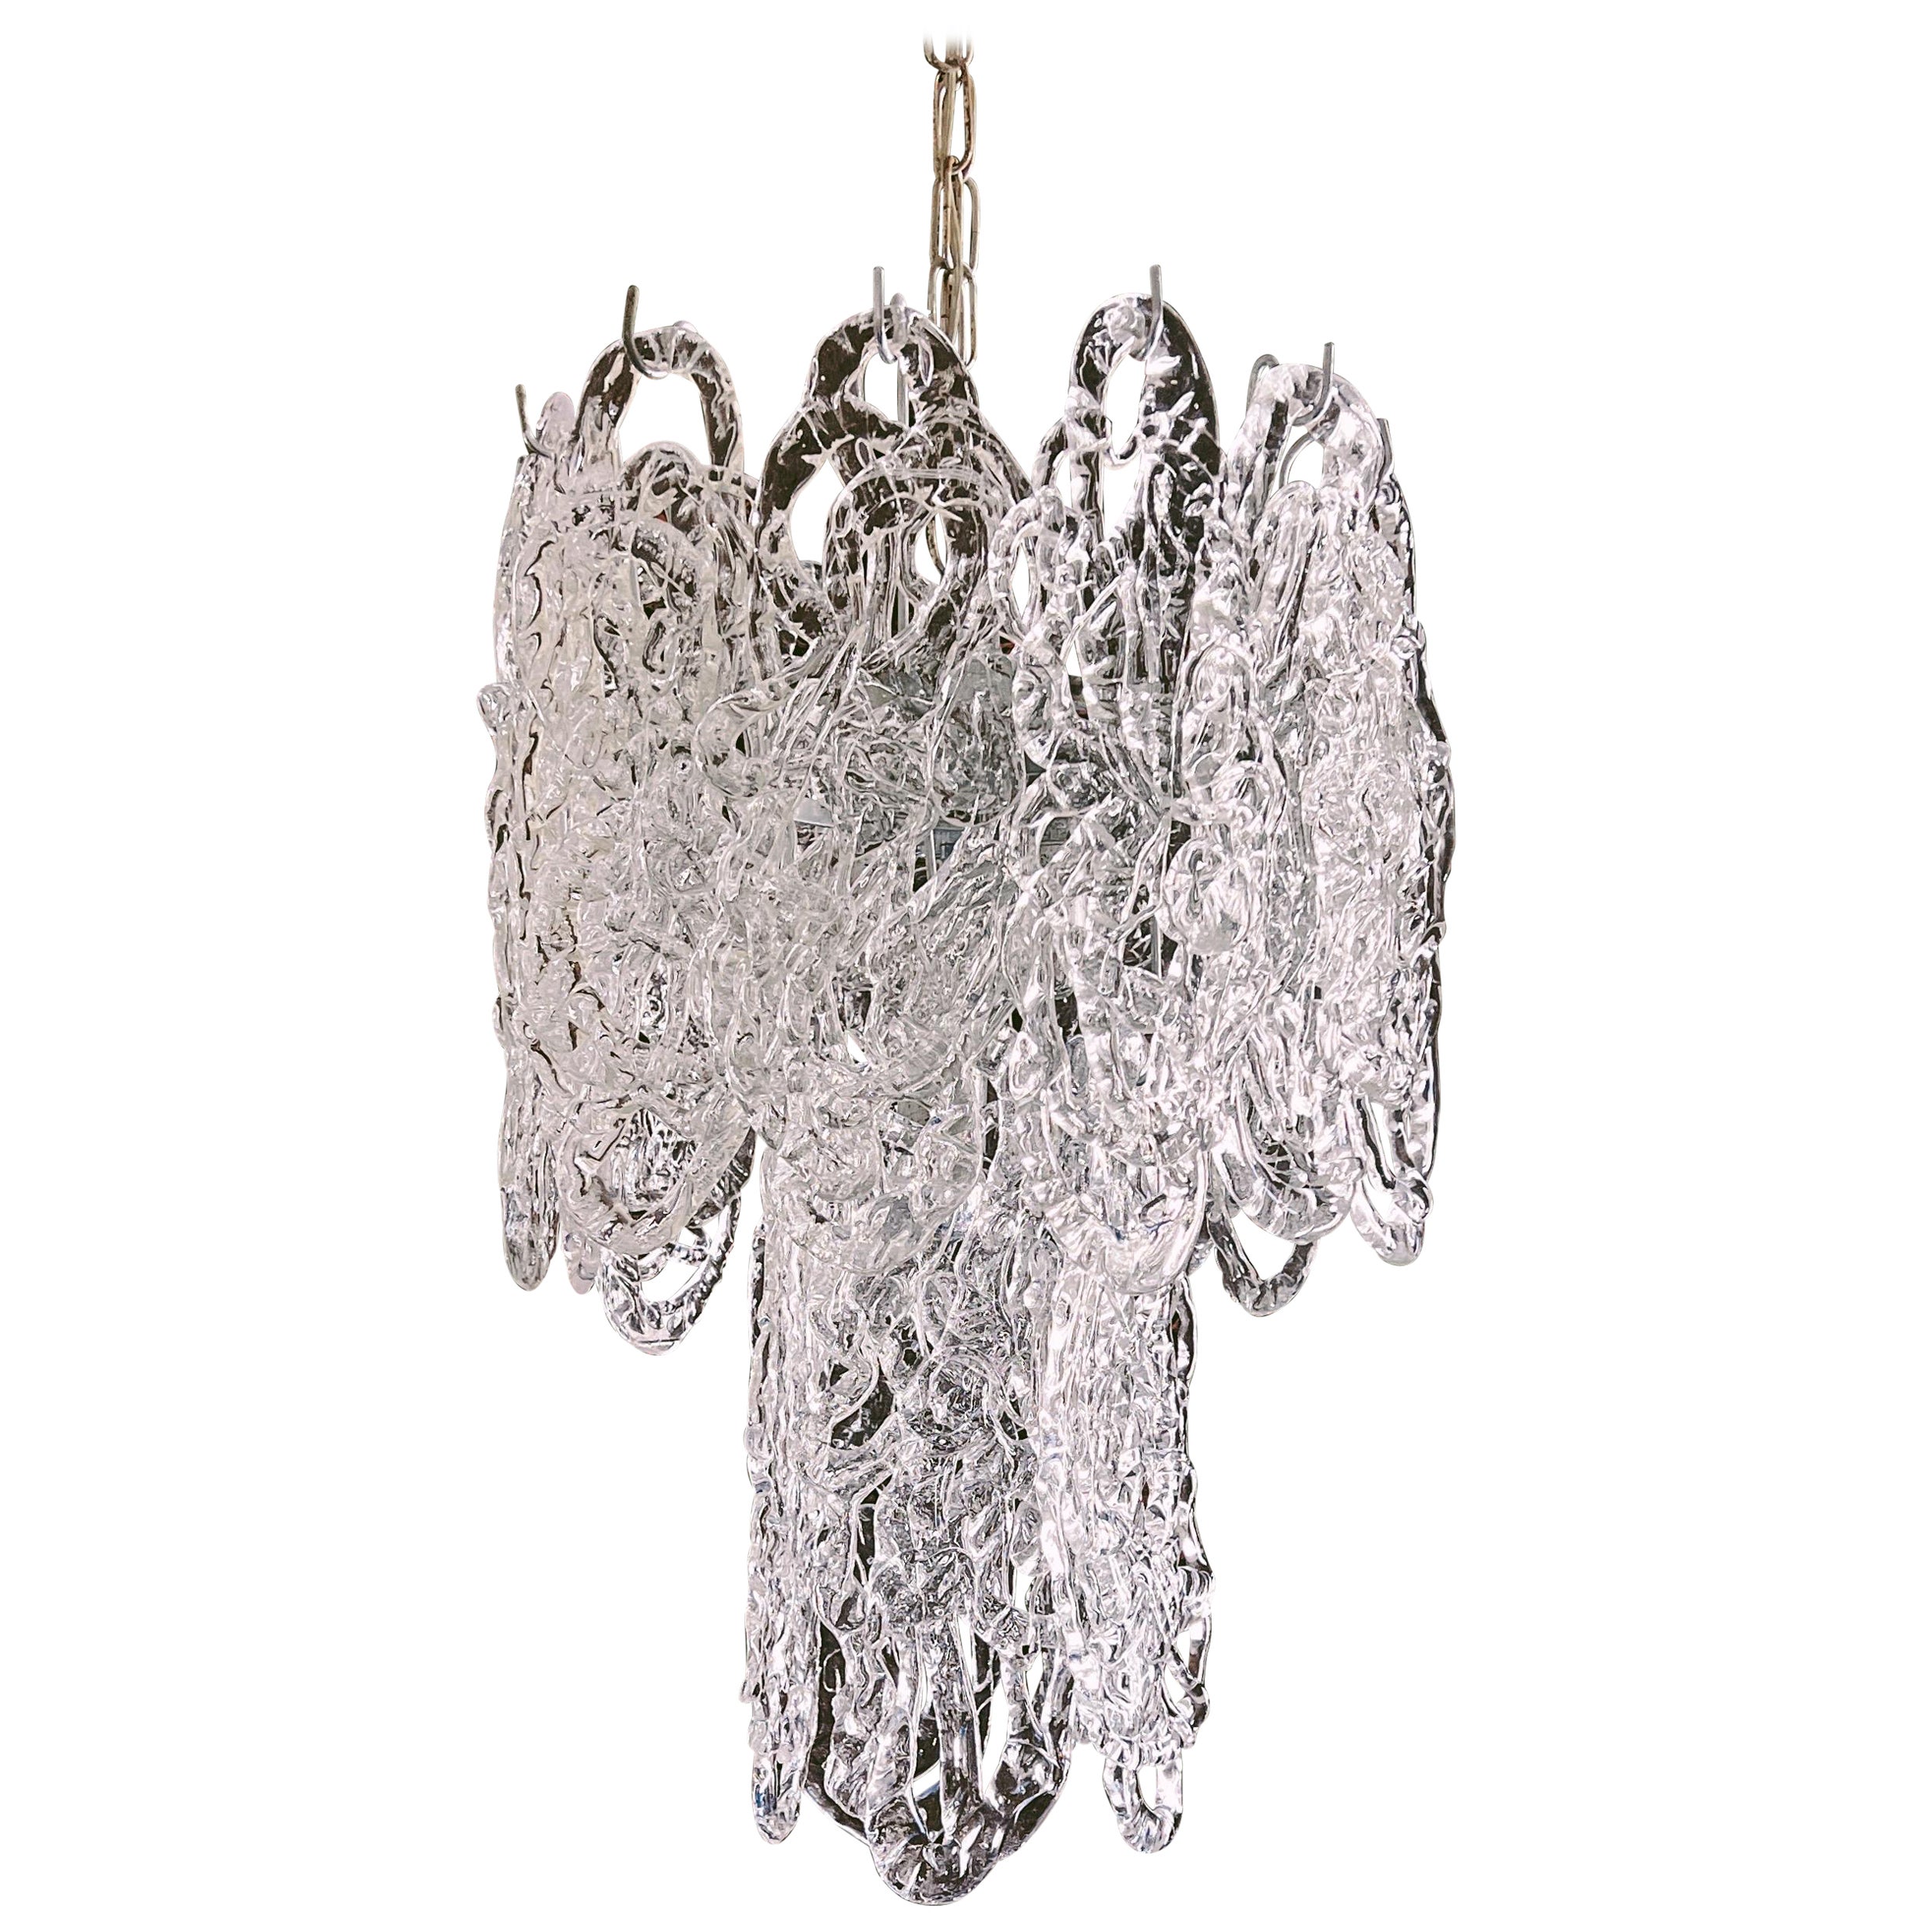 1960s Murano glass chandelier in model "Ragnatela" by mazzega